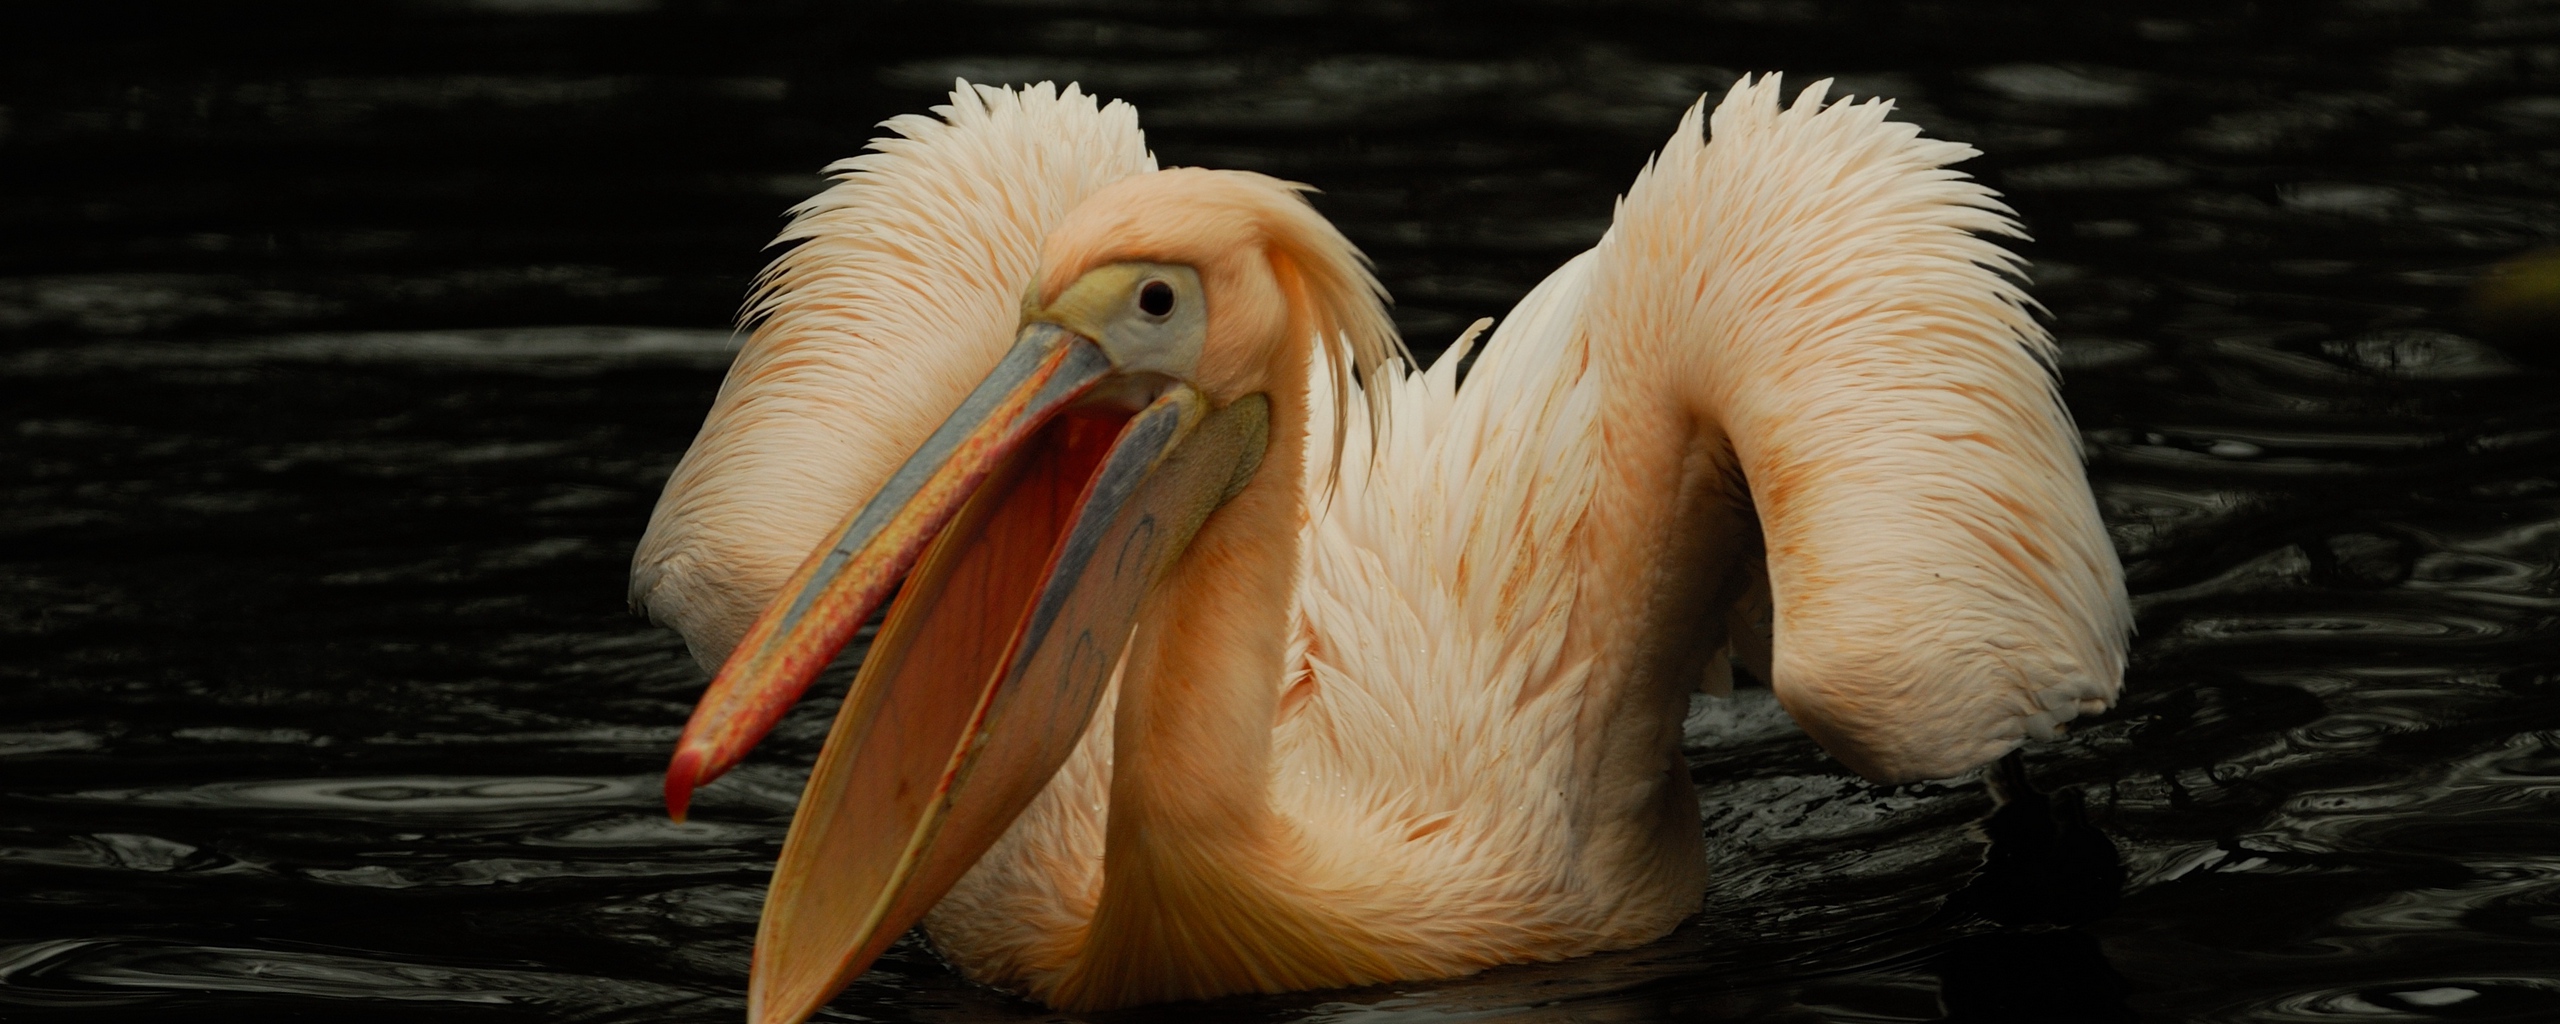 Wallpaper Pelican, Pink, Bird, Water - Pelican Water - HD Wallpaper 